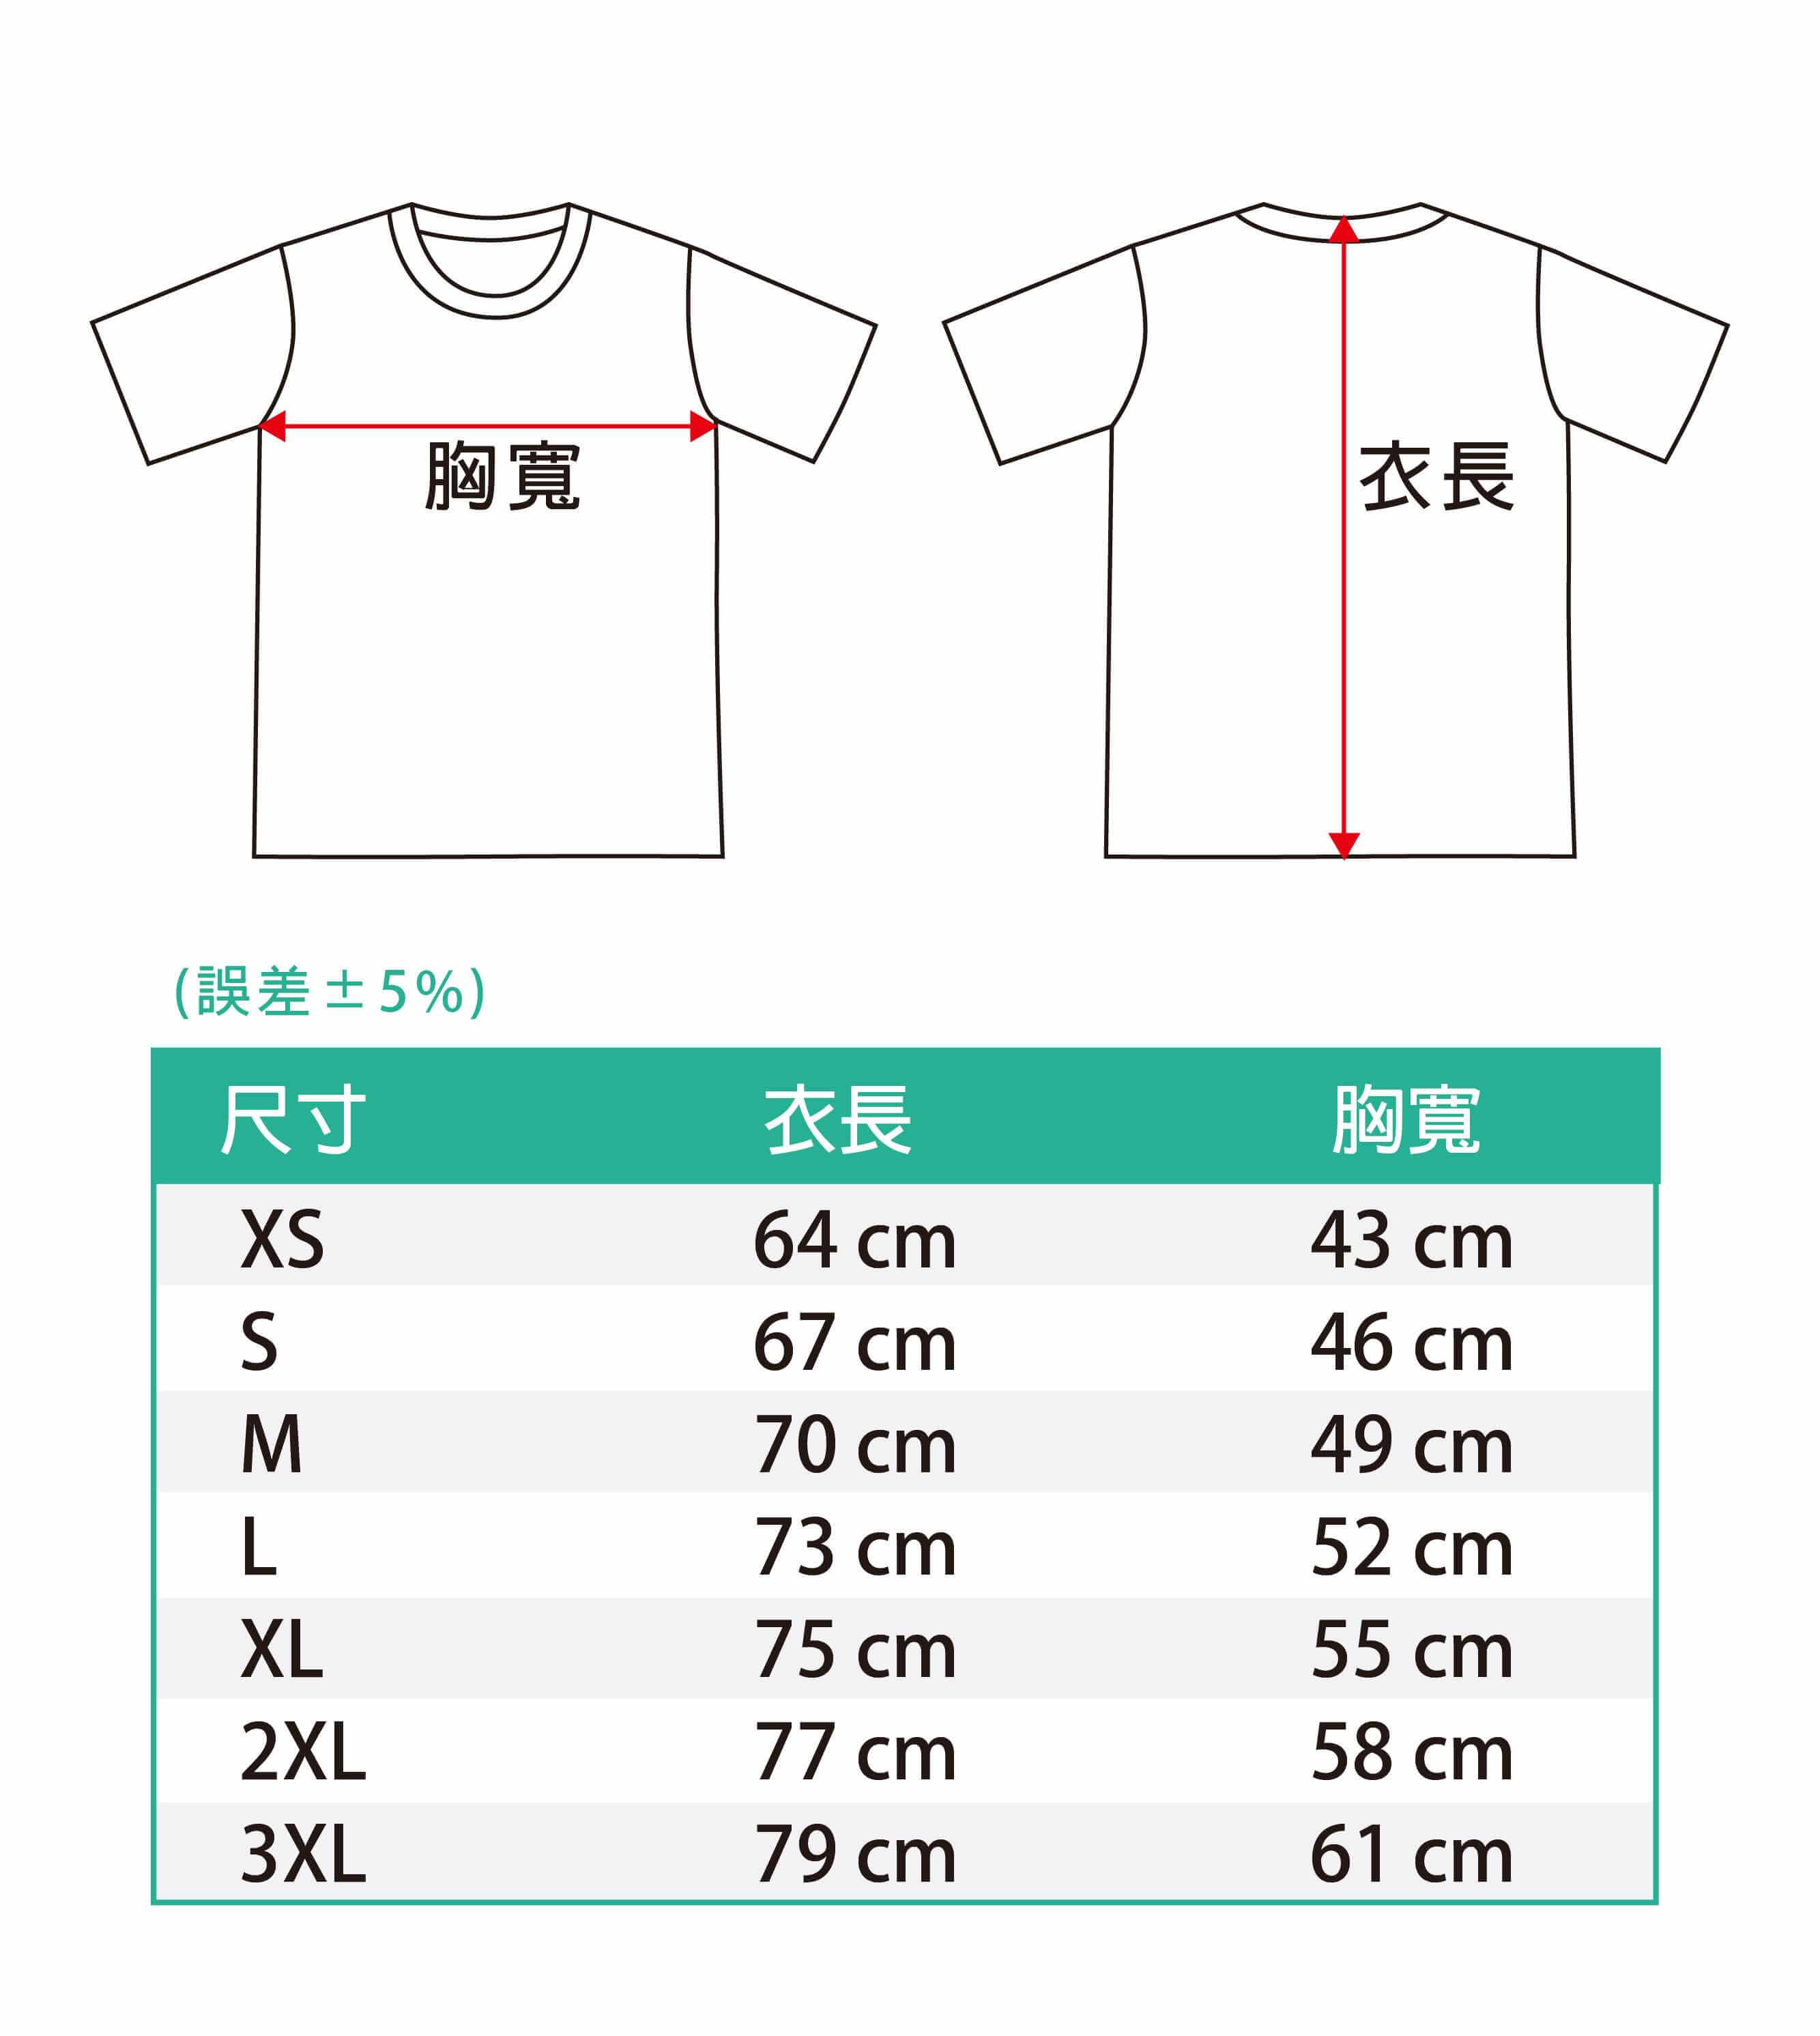 懷疑人生熊貓T恤(黑色款)的第5張圖(客製化公司制服、班服製作、團體服製作等示意或作品圖)